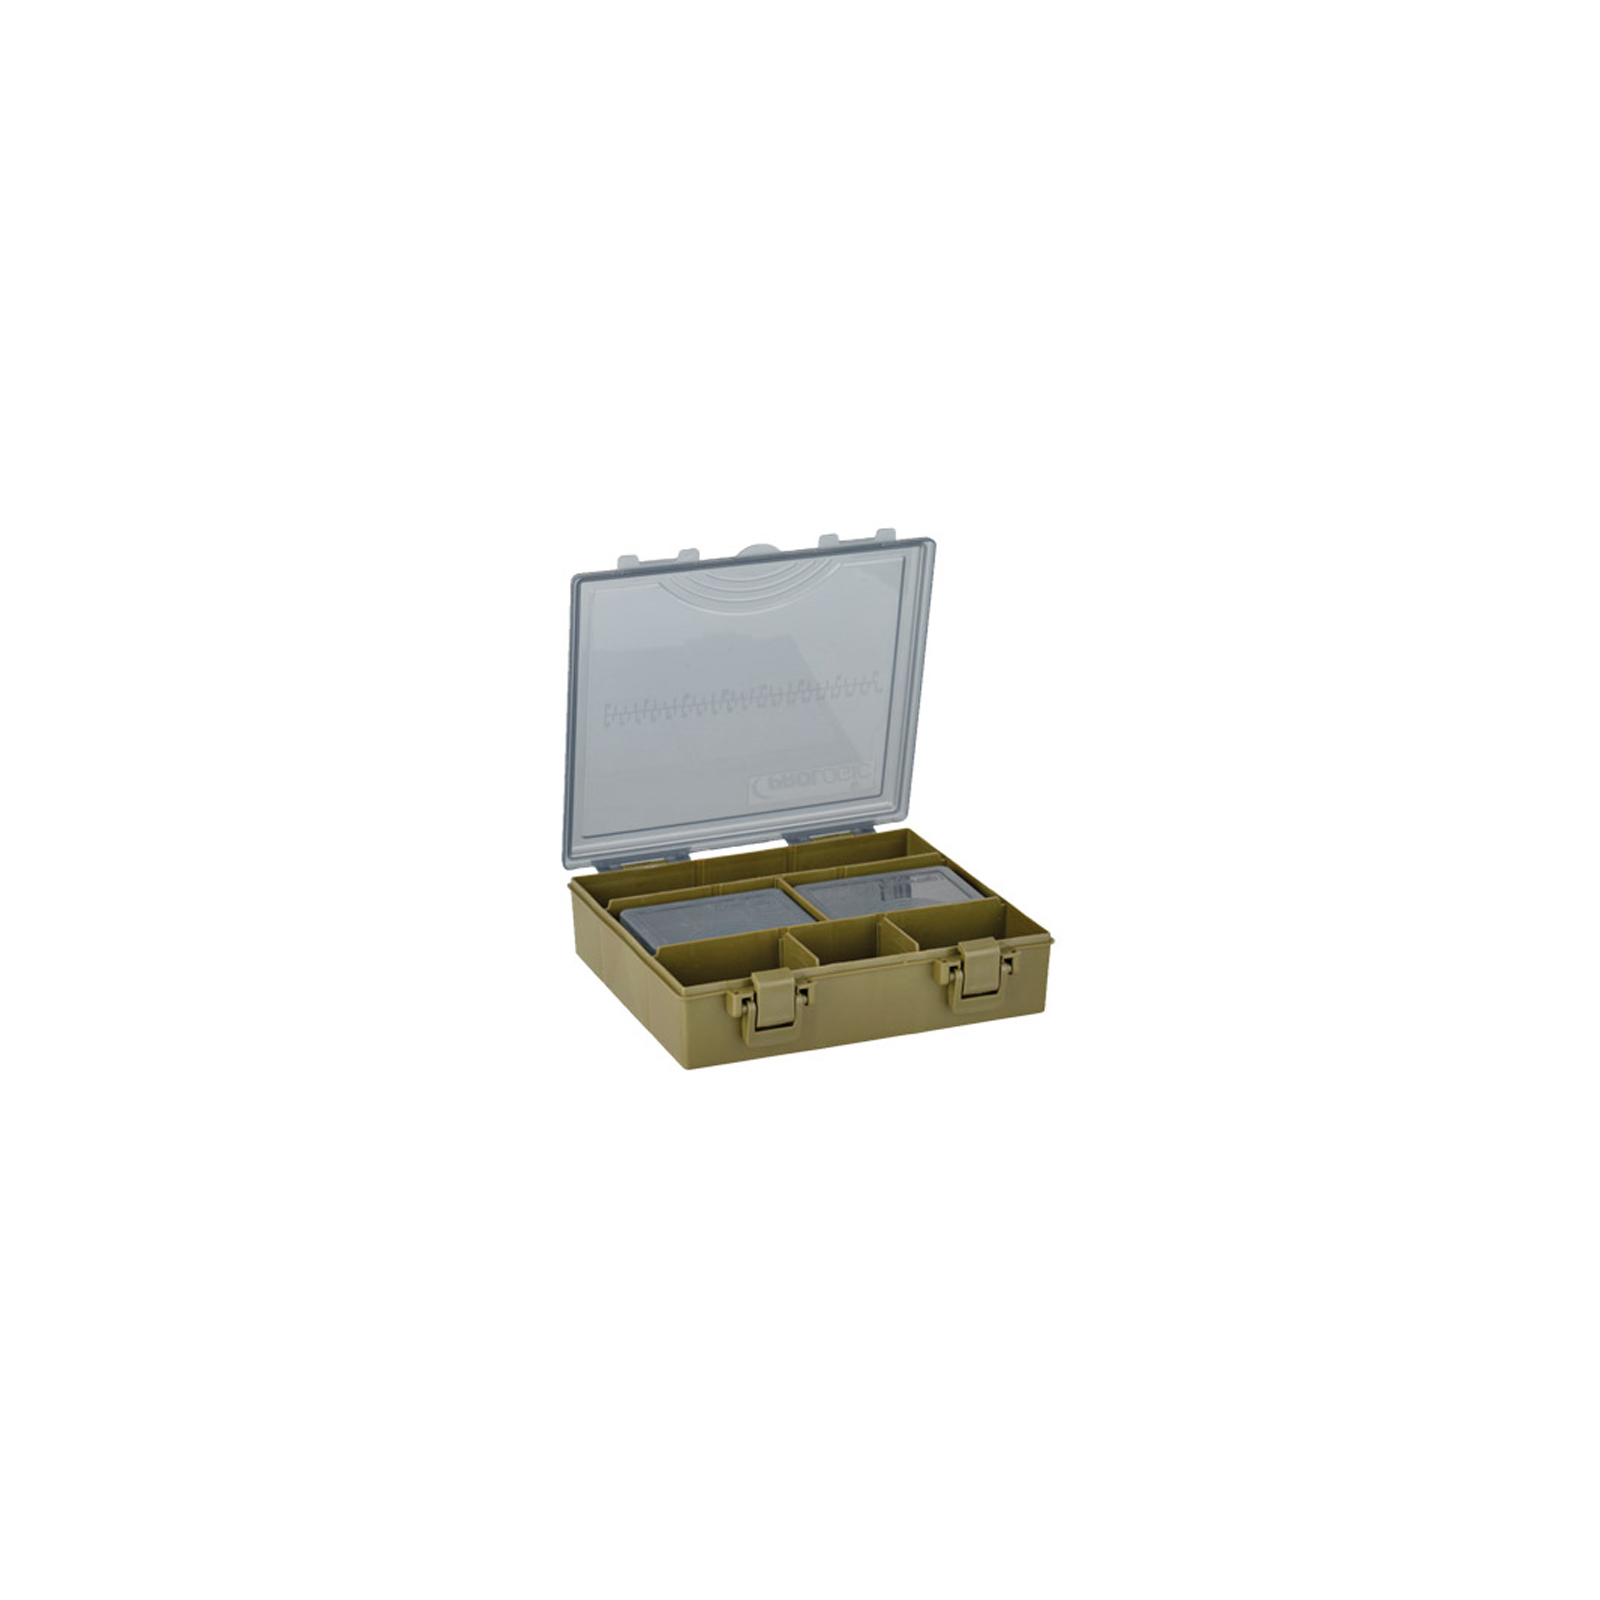 Коробка рибалки Prologic Tackle Organizer S 1+4 BoxSystem (23.5x20x6cm) (1846.09.00) зображення 2